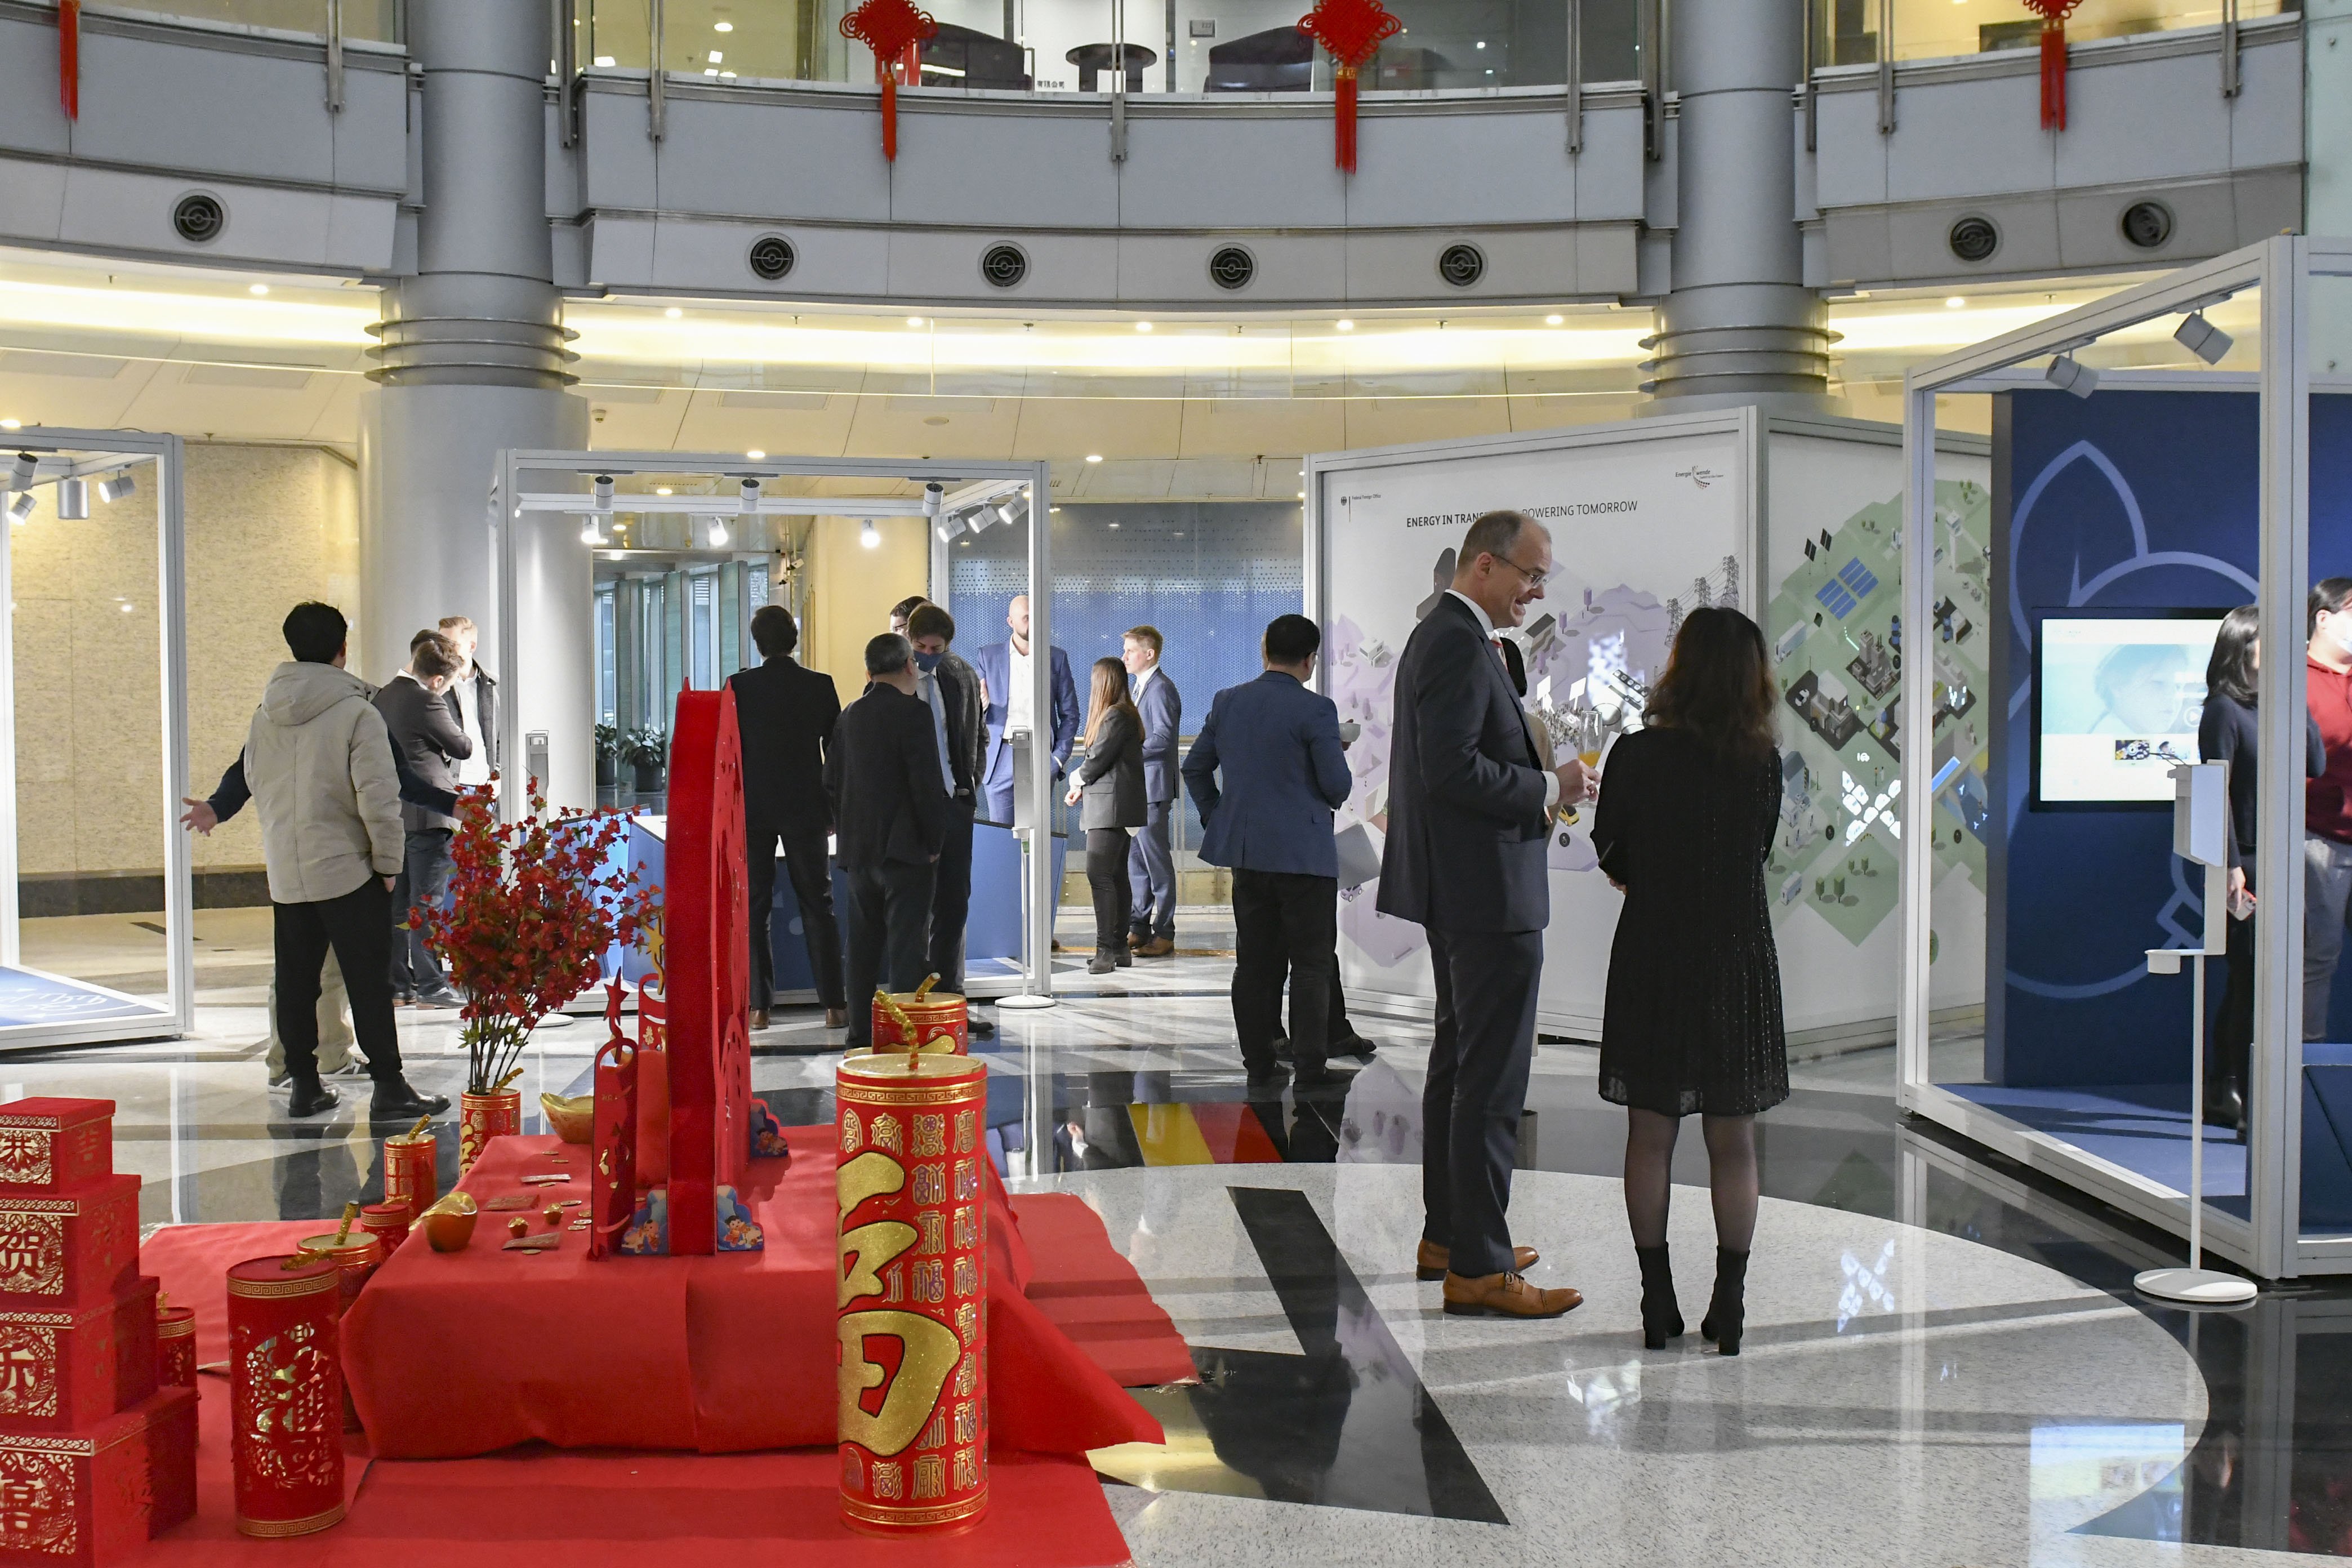 Besucher*innen stehen im Foyer des German Centers in Shanghai zur Eröffnung der Wanderausstellung. Sie schauen sich die Ausstellungselemente an. Zwei Männer unterhalten sich stehend neben roter chinesischer Dekoration. Januar 2021.